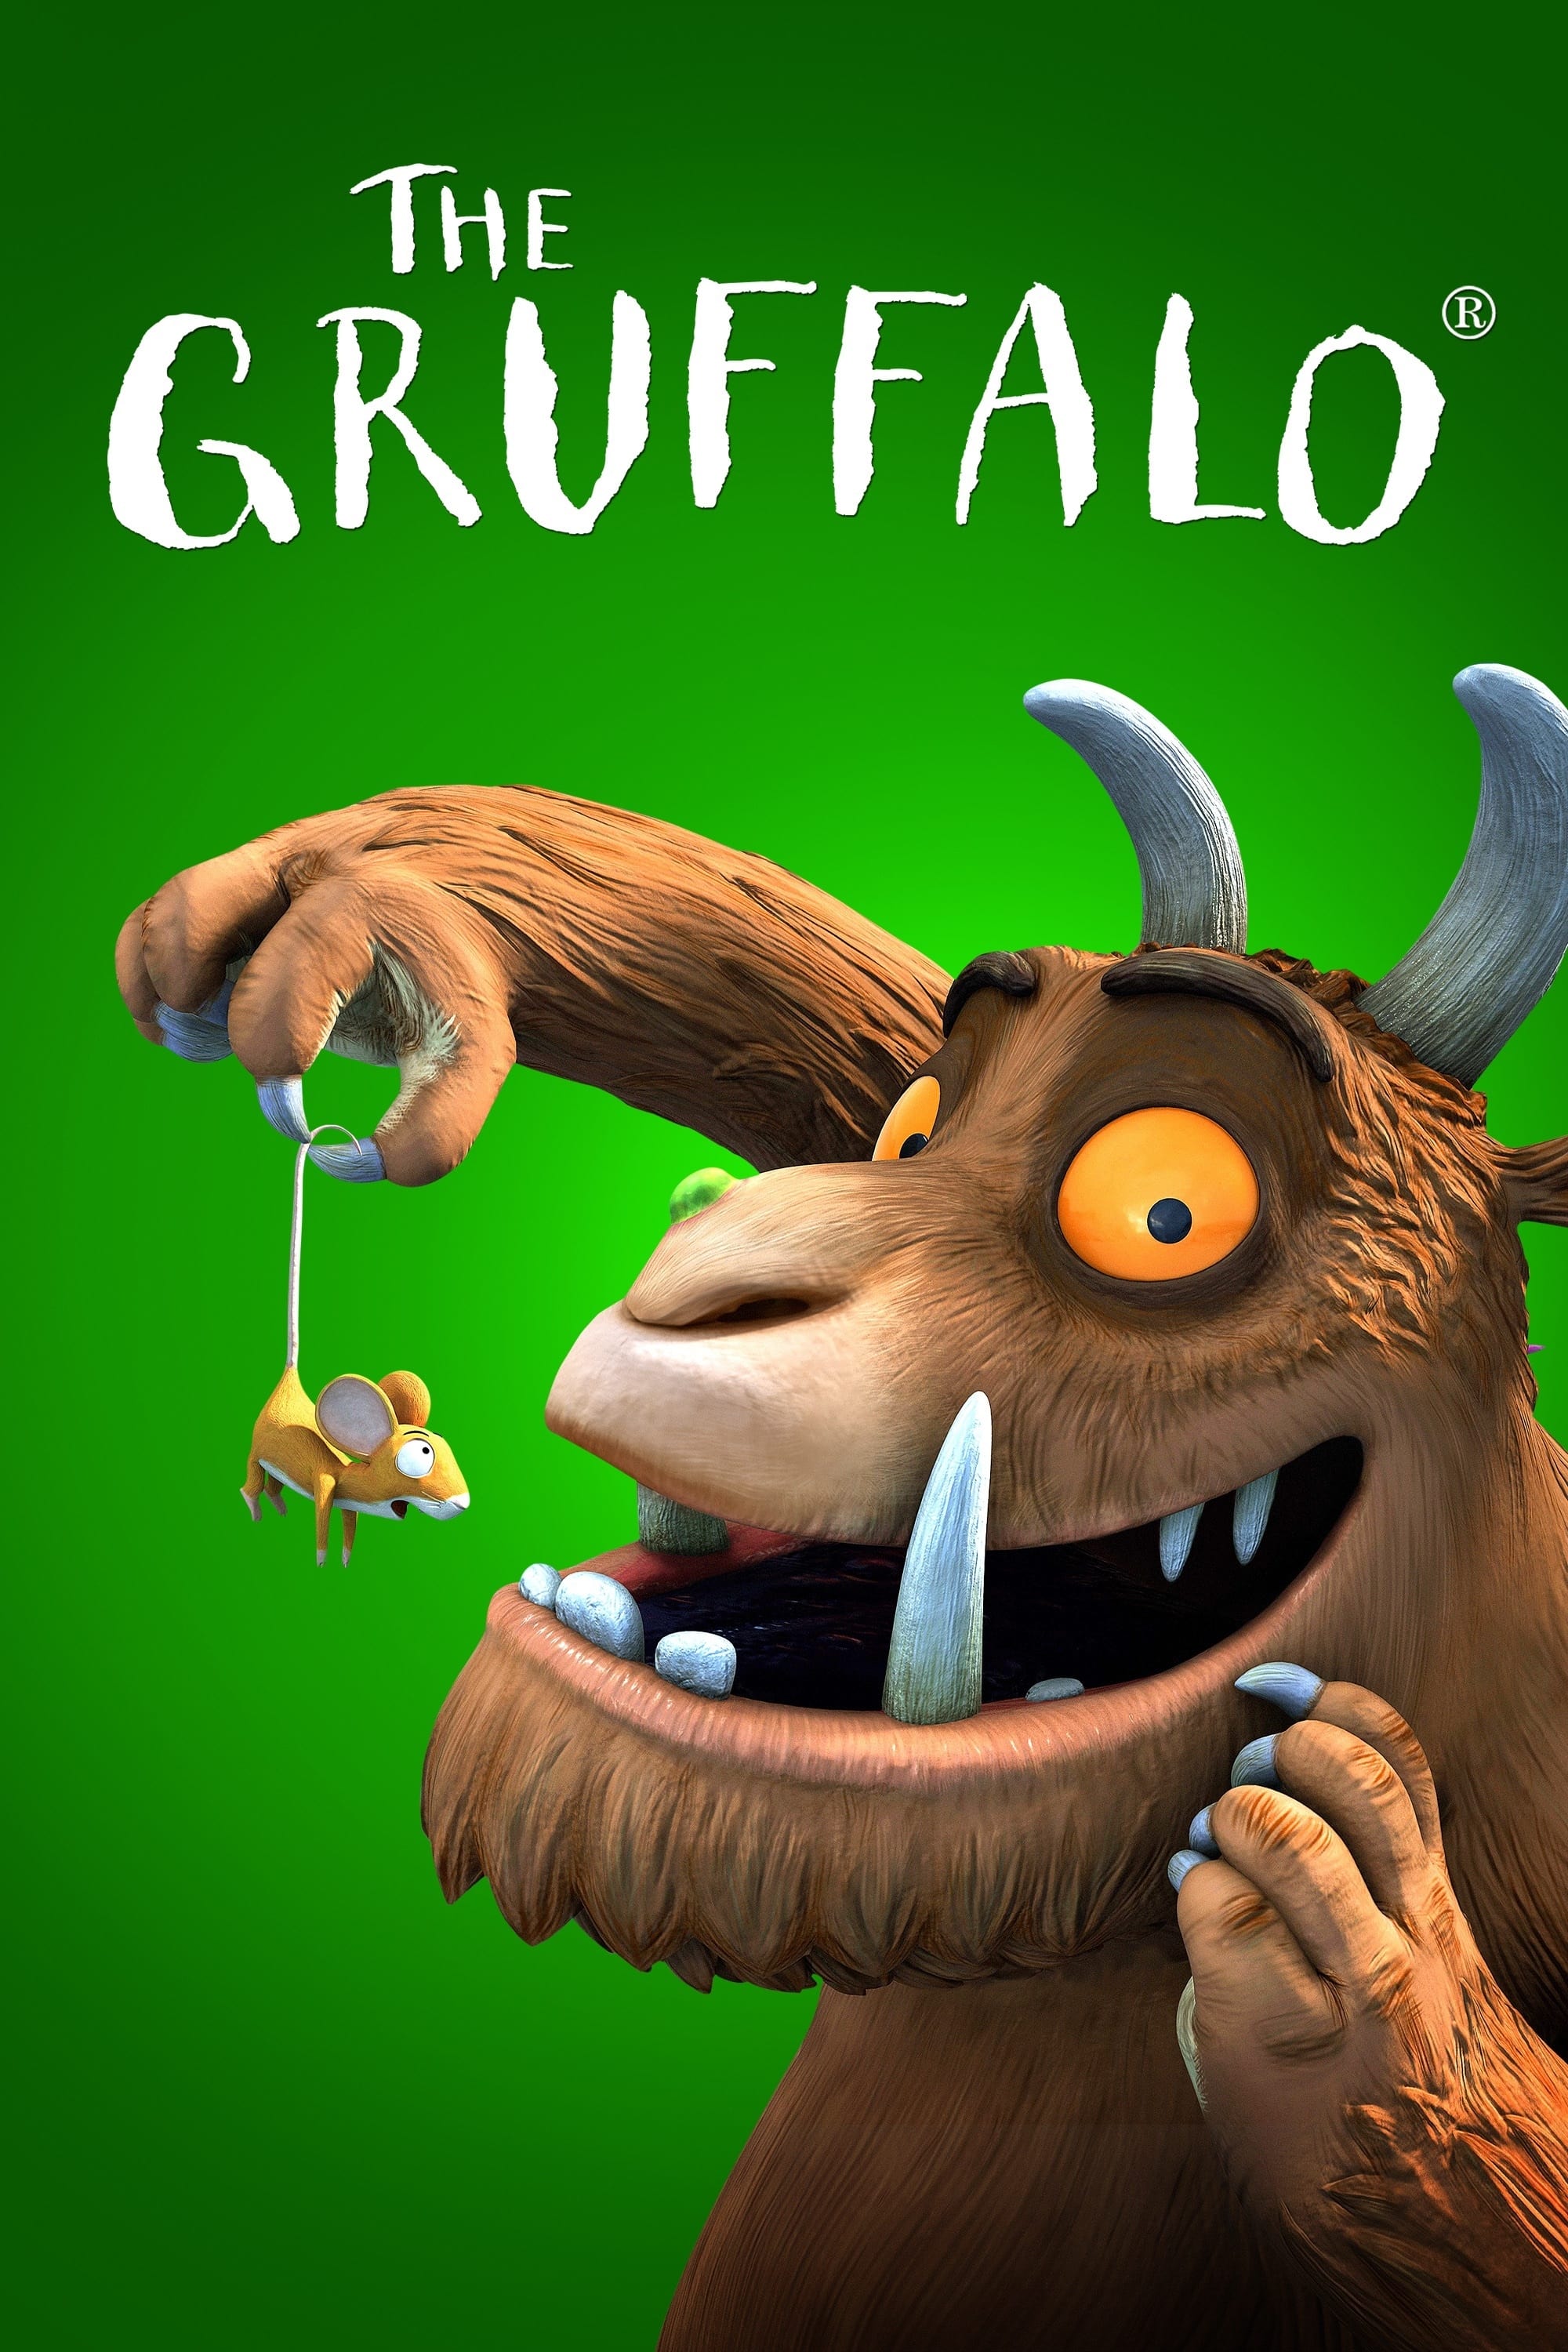 Le Gruffalo (2009)